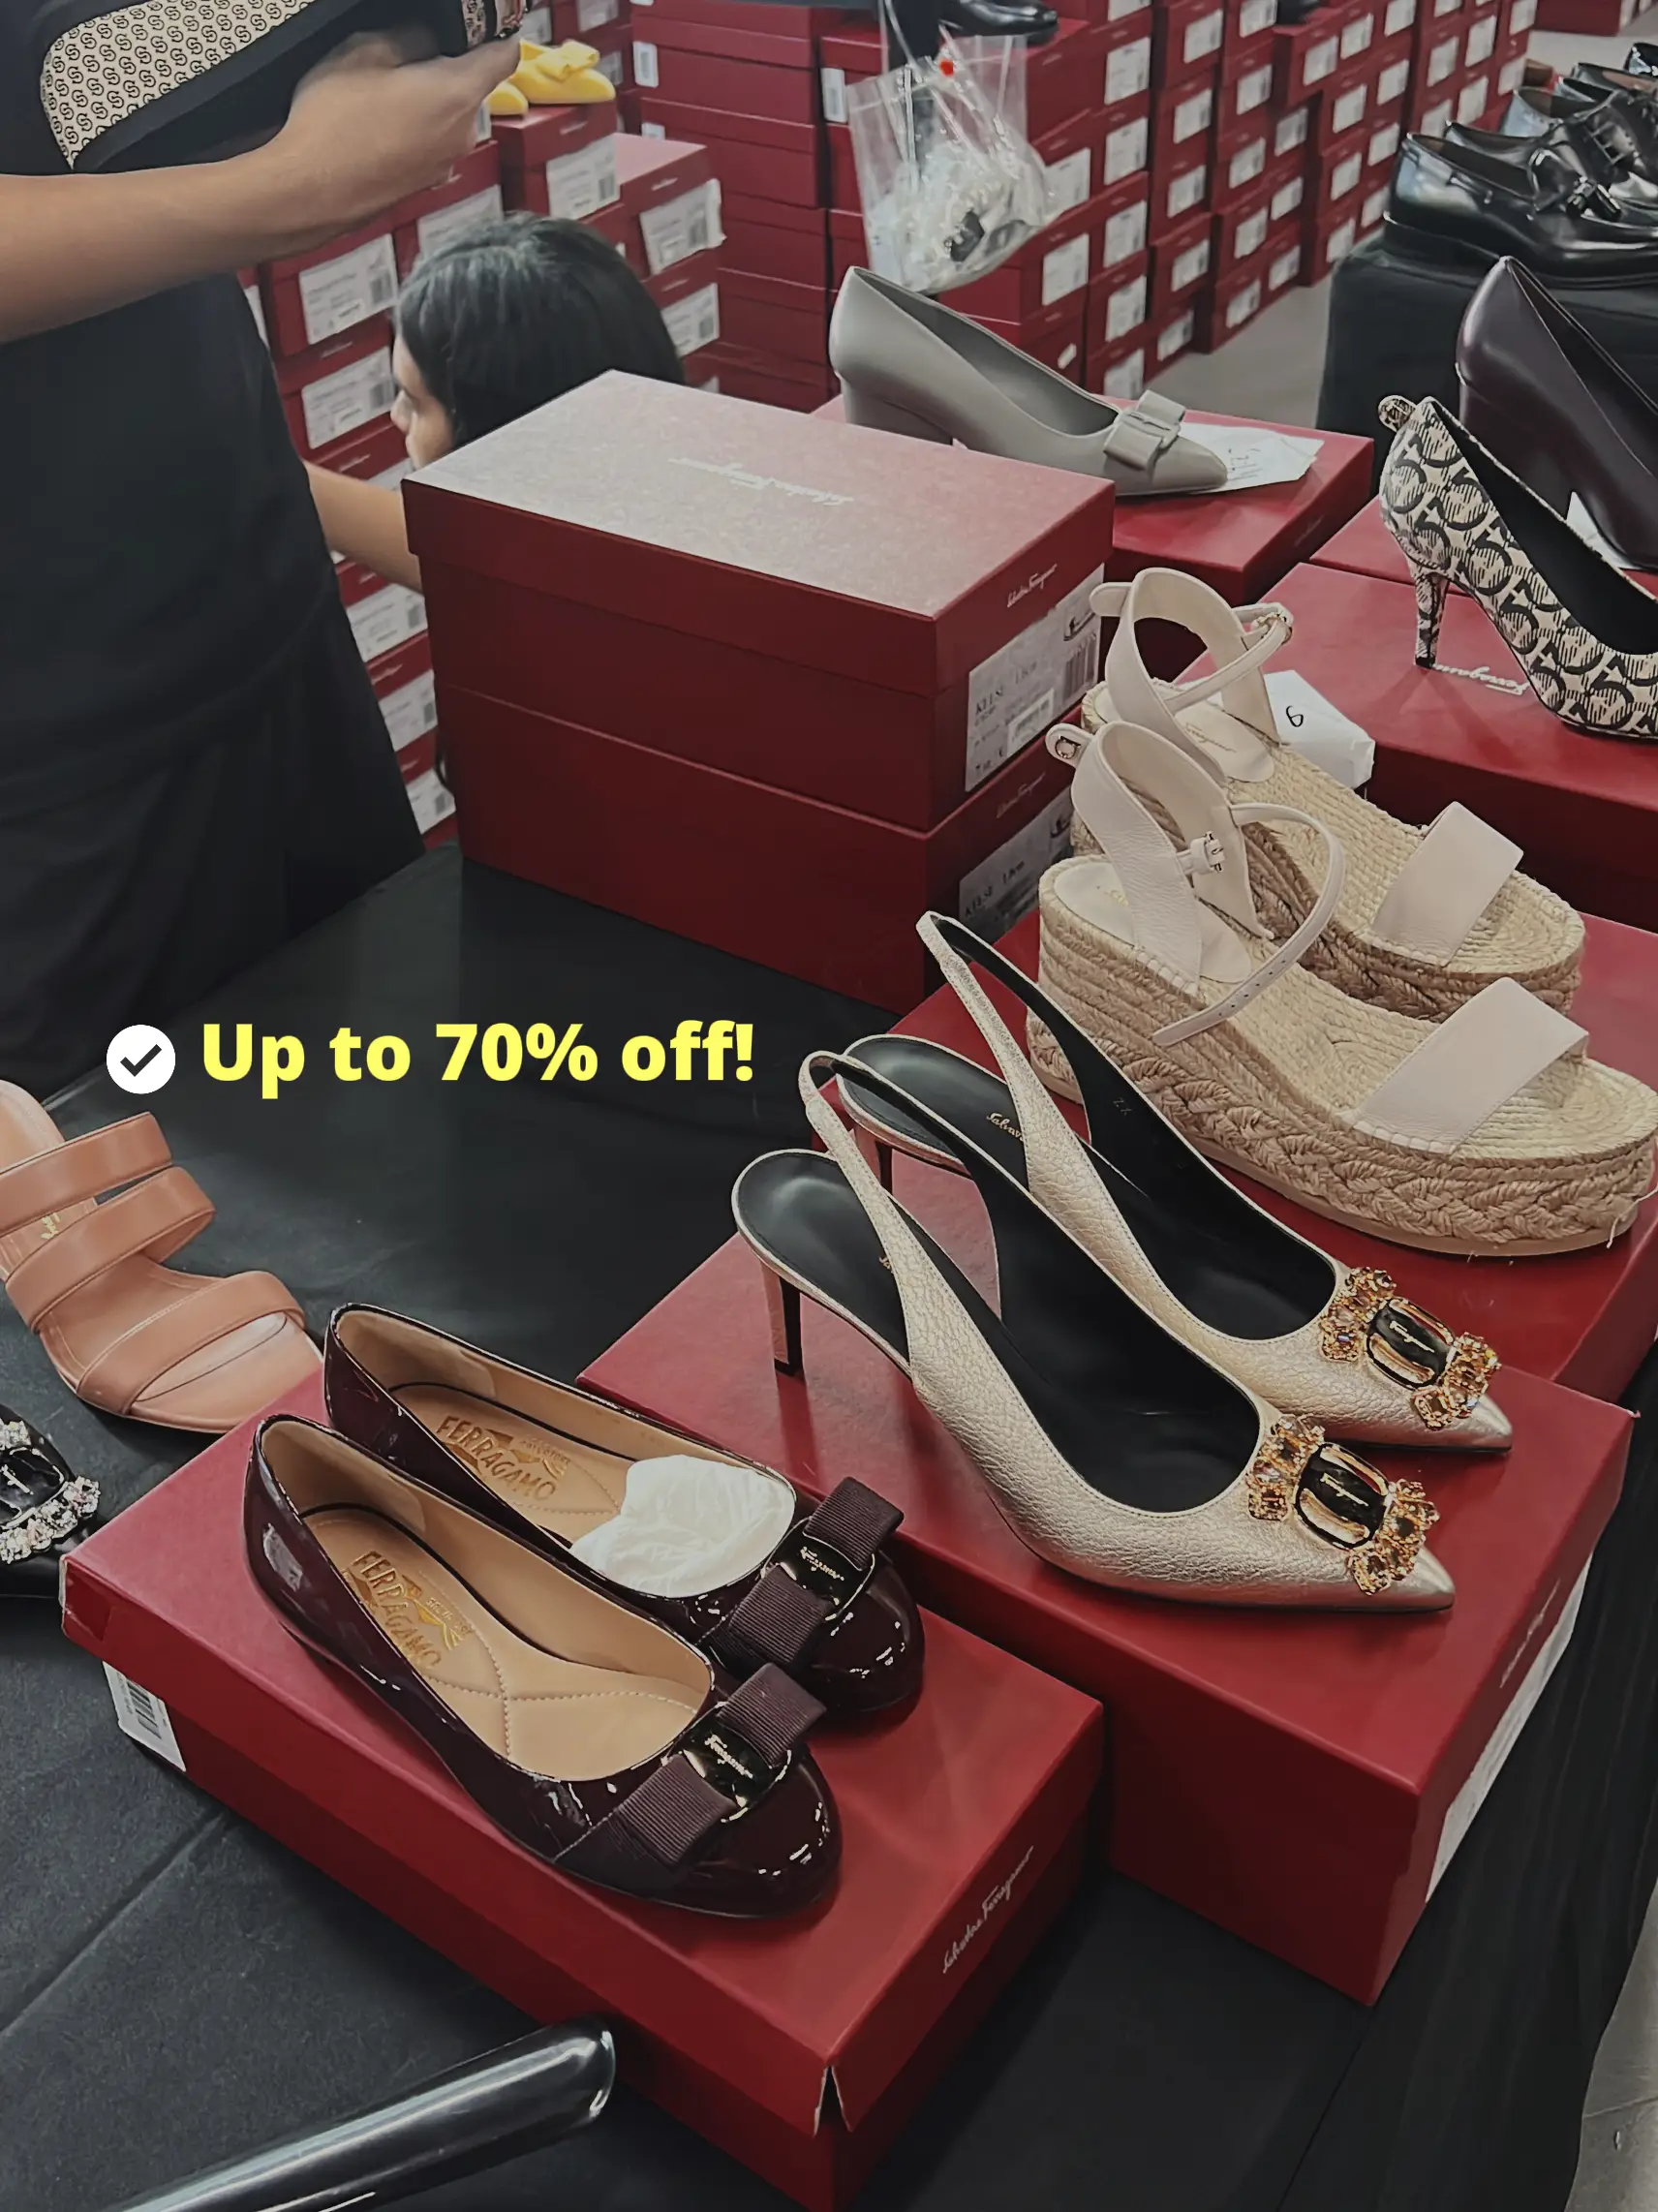 Men's Ferragamo Shoes Sale, Up to 70% Off